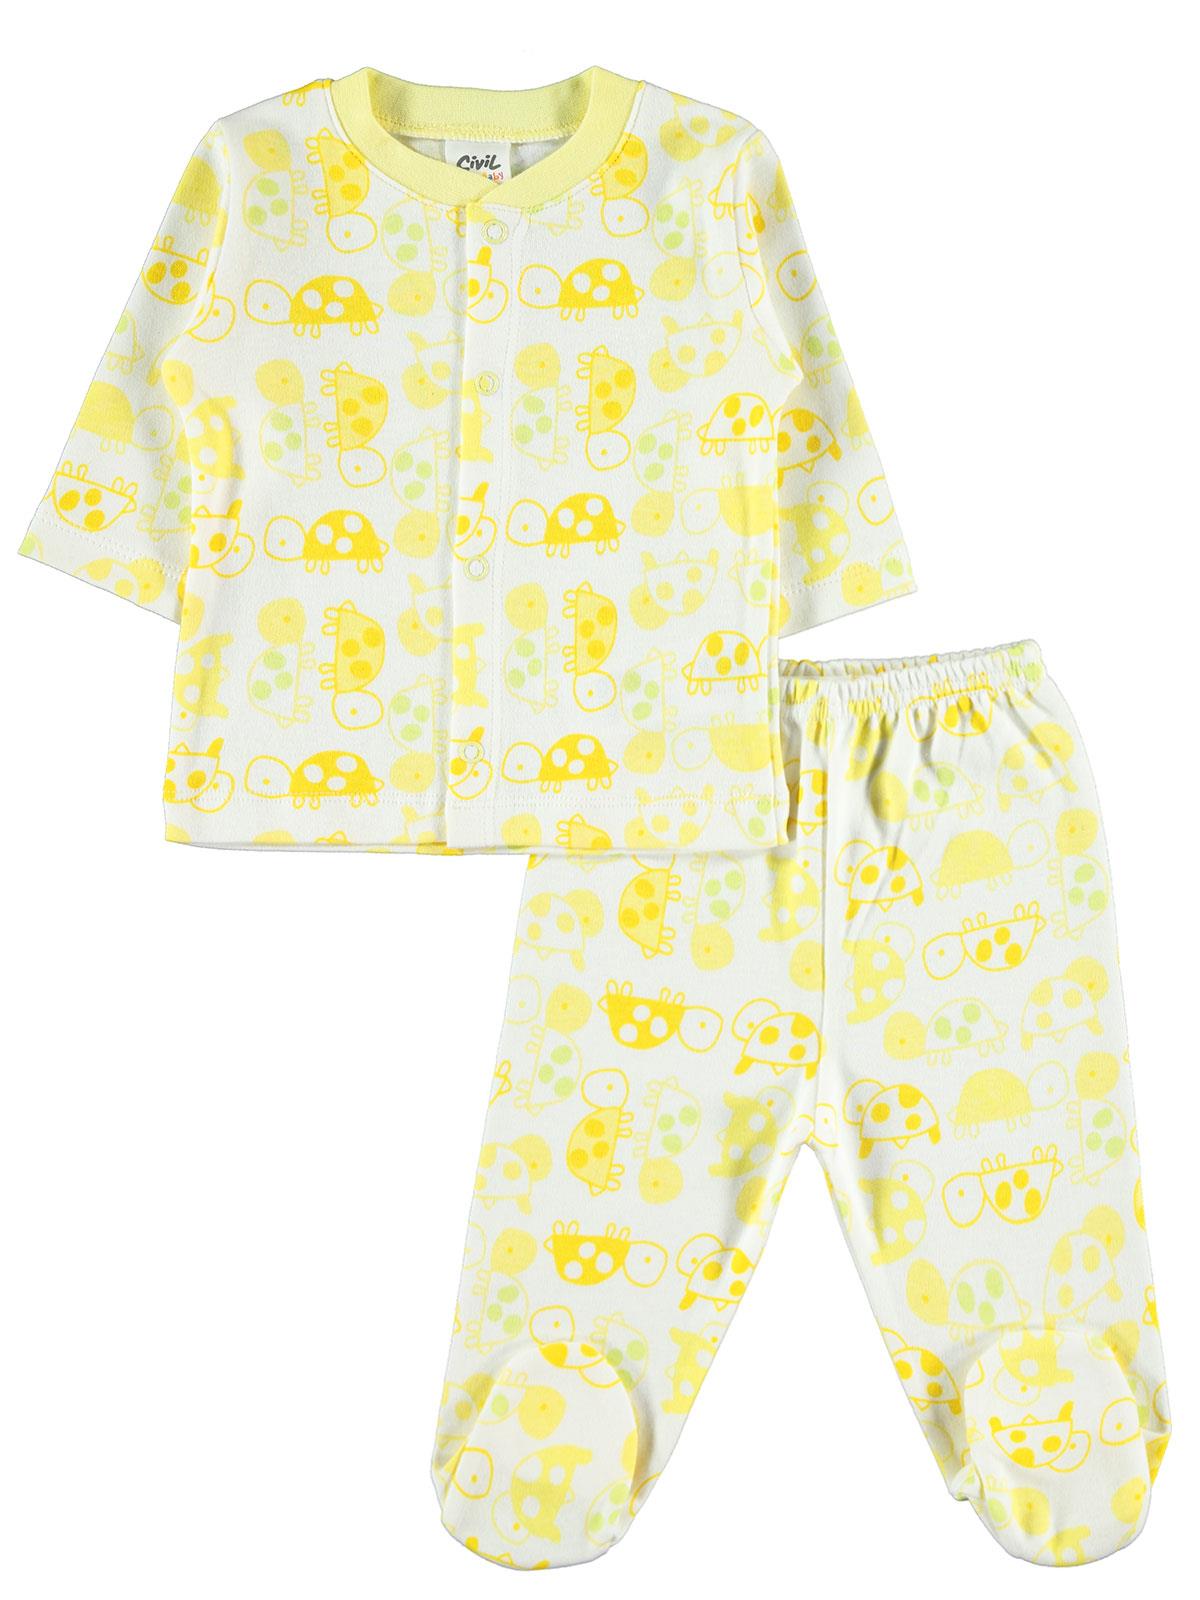 Civil Baby Bebek Pijama Takımı 3-6 Ay Sarı